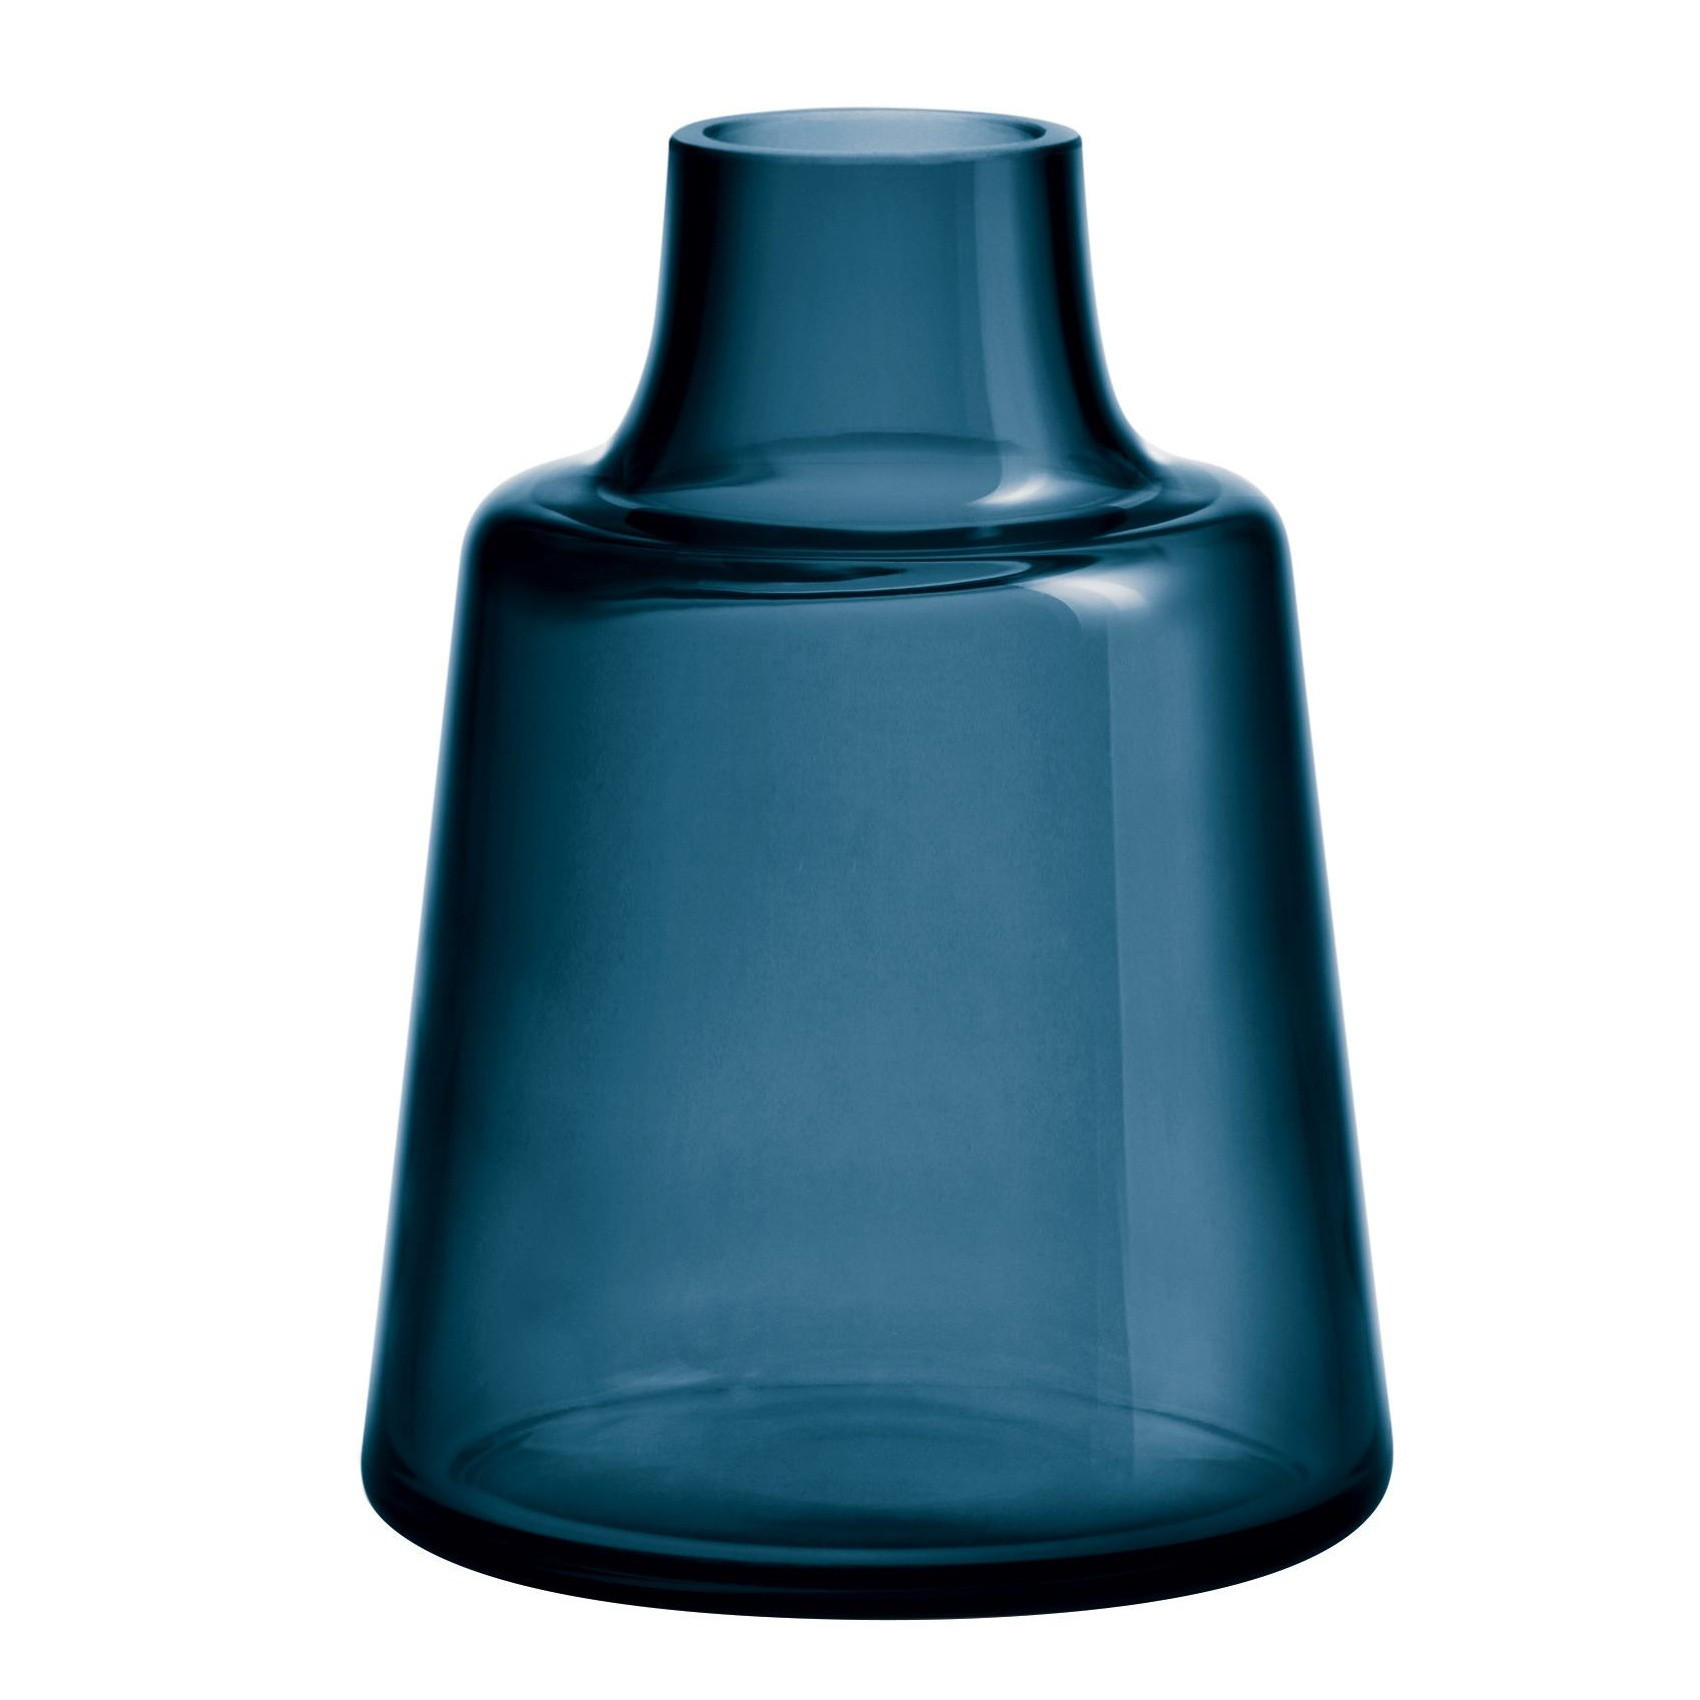 19 Best Plastic Vase with Lid 2024 free download plastic vase with lid of holmegaard flora vase h 24cm ambientedirect regarding 232361 1700x1700 id1922502 c23d7e4f57bf890f68b32fb46a88790c